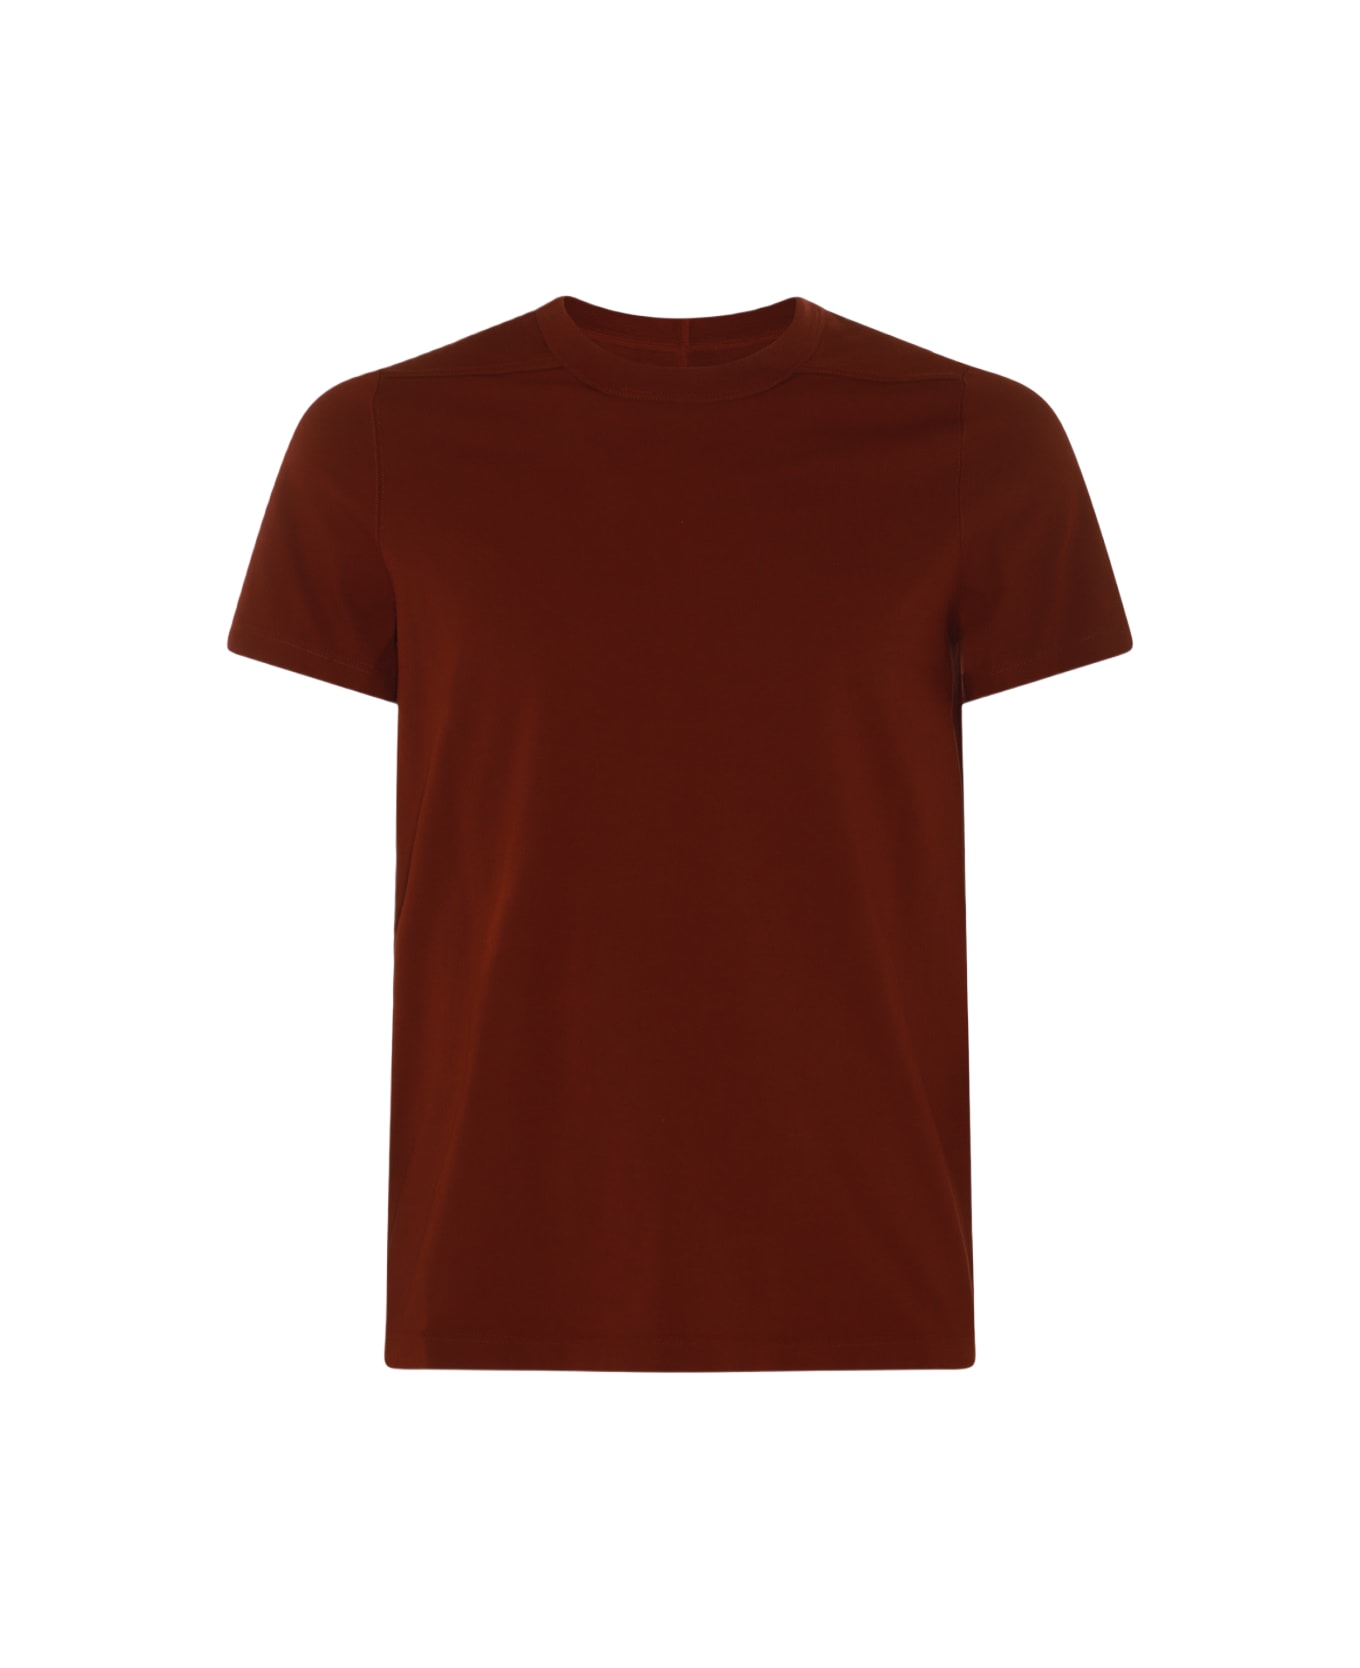 Rick Owens Dark Red Cotton T-shirt - HENNA